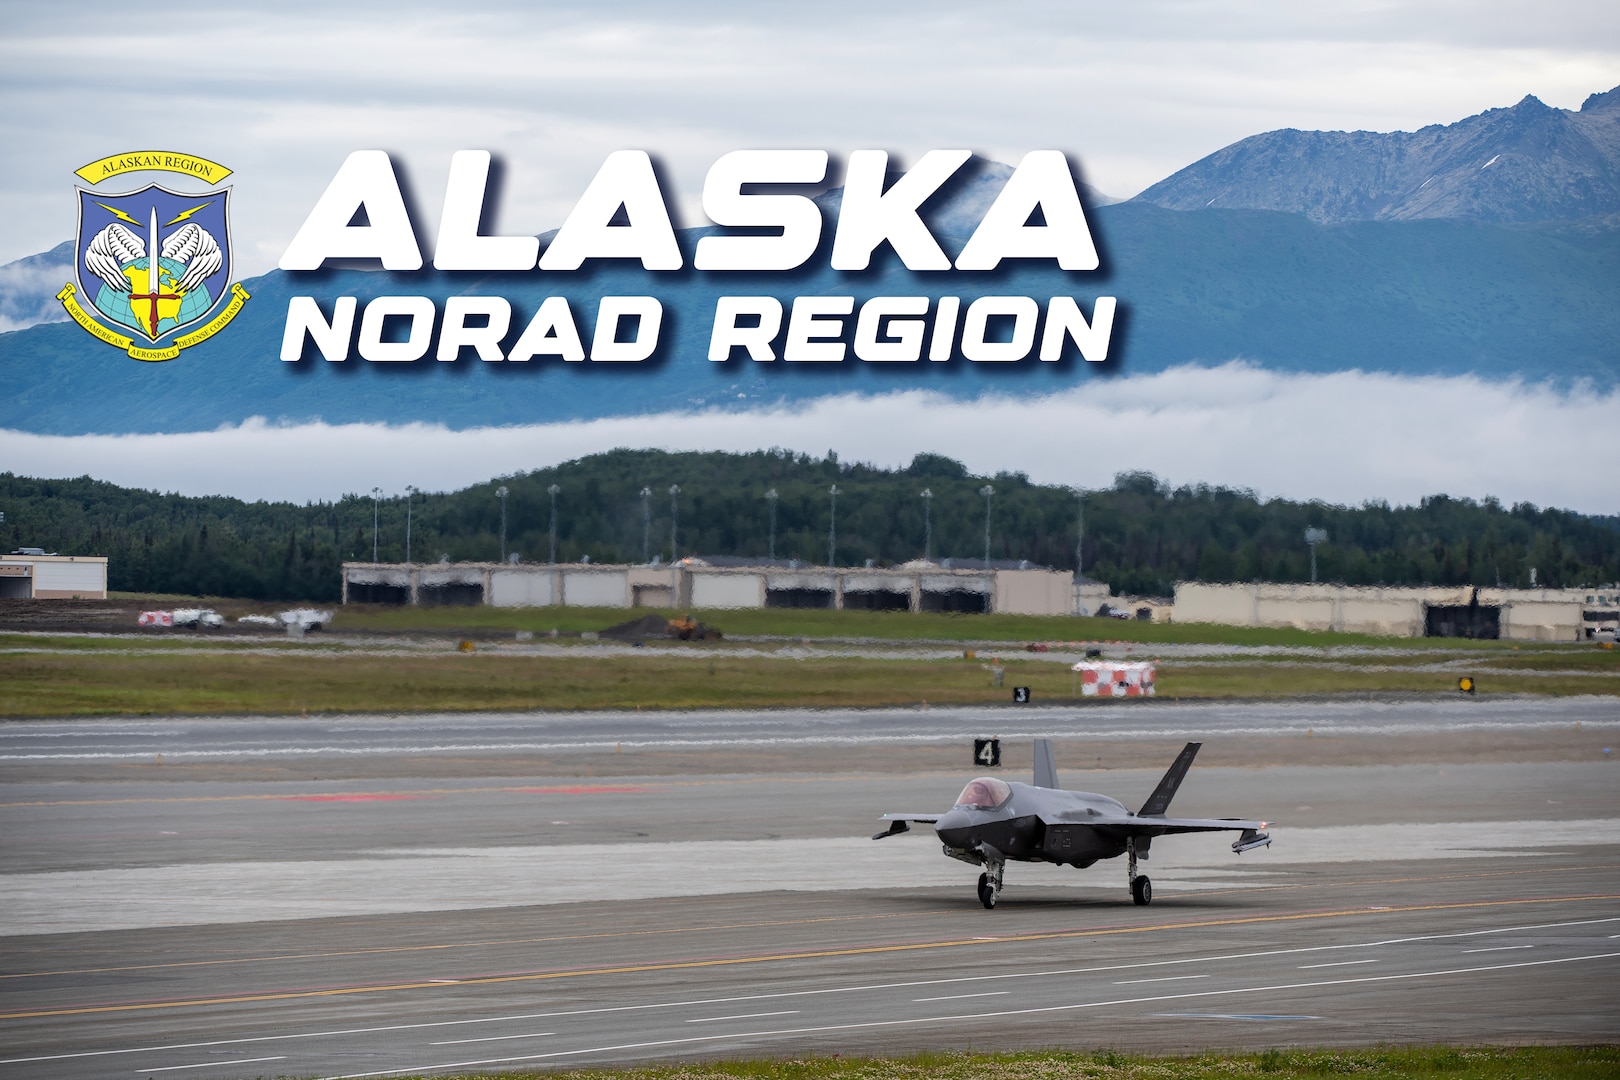 Alaska NORAD Region photo illustration